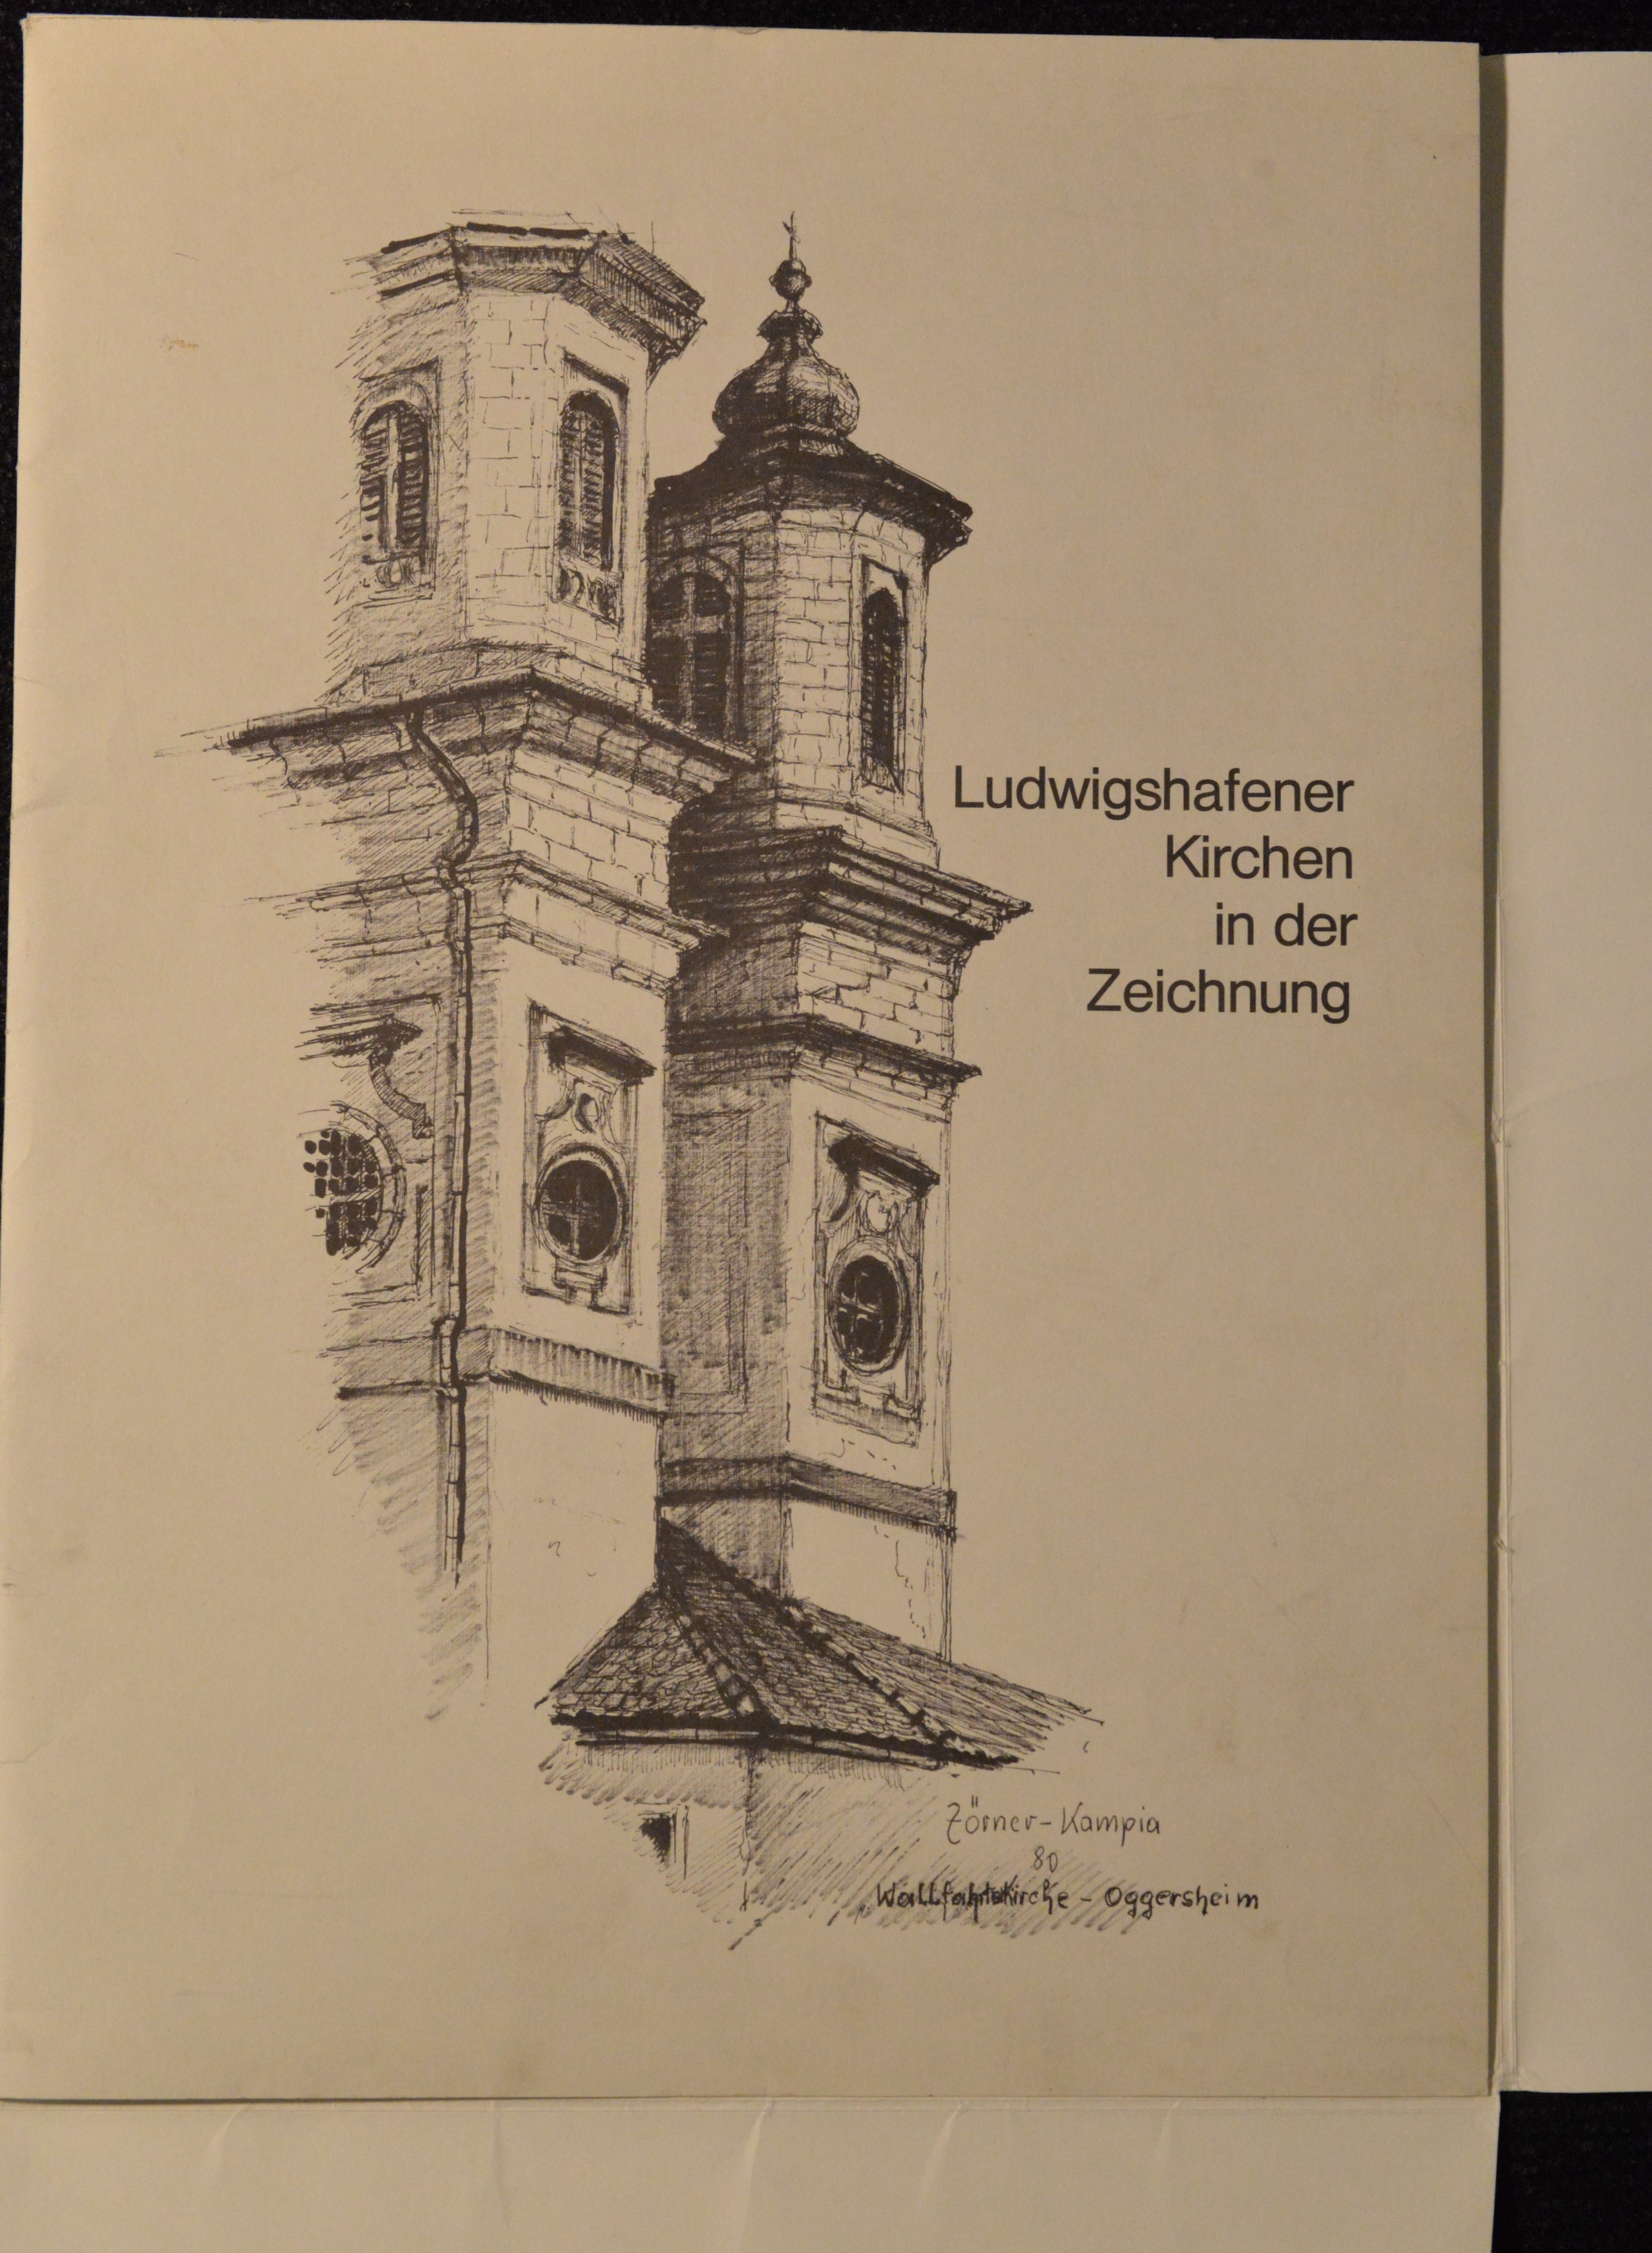 Ludwigshafener Kirchen (HKK CC BY-NC-SA)